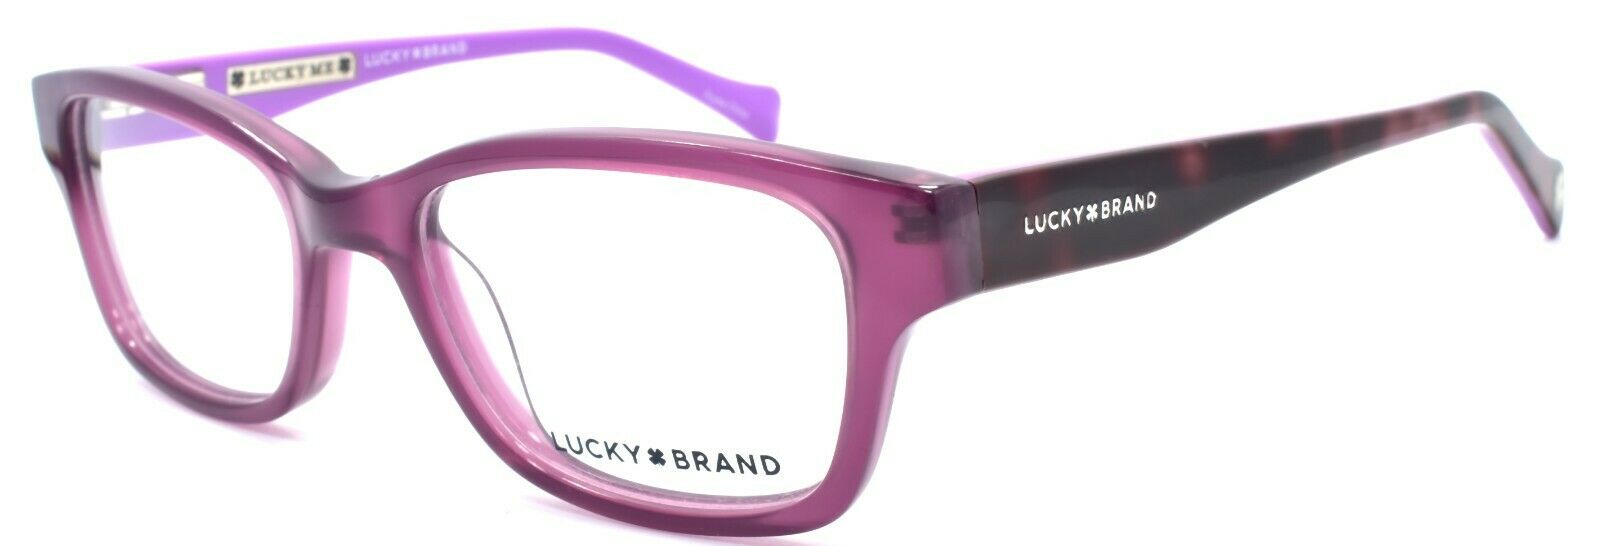 1-LUCKY BRAND D705 Kids Girls Eyeglasses Frames 46-16-125 Purple-751286295672-IKSpecs